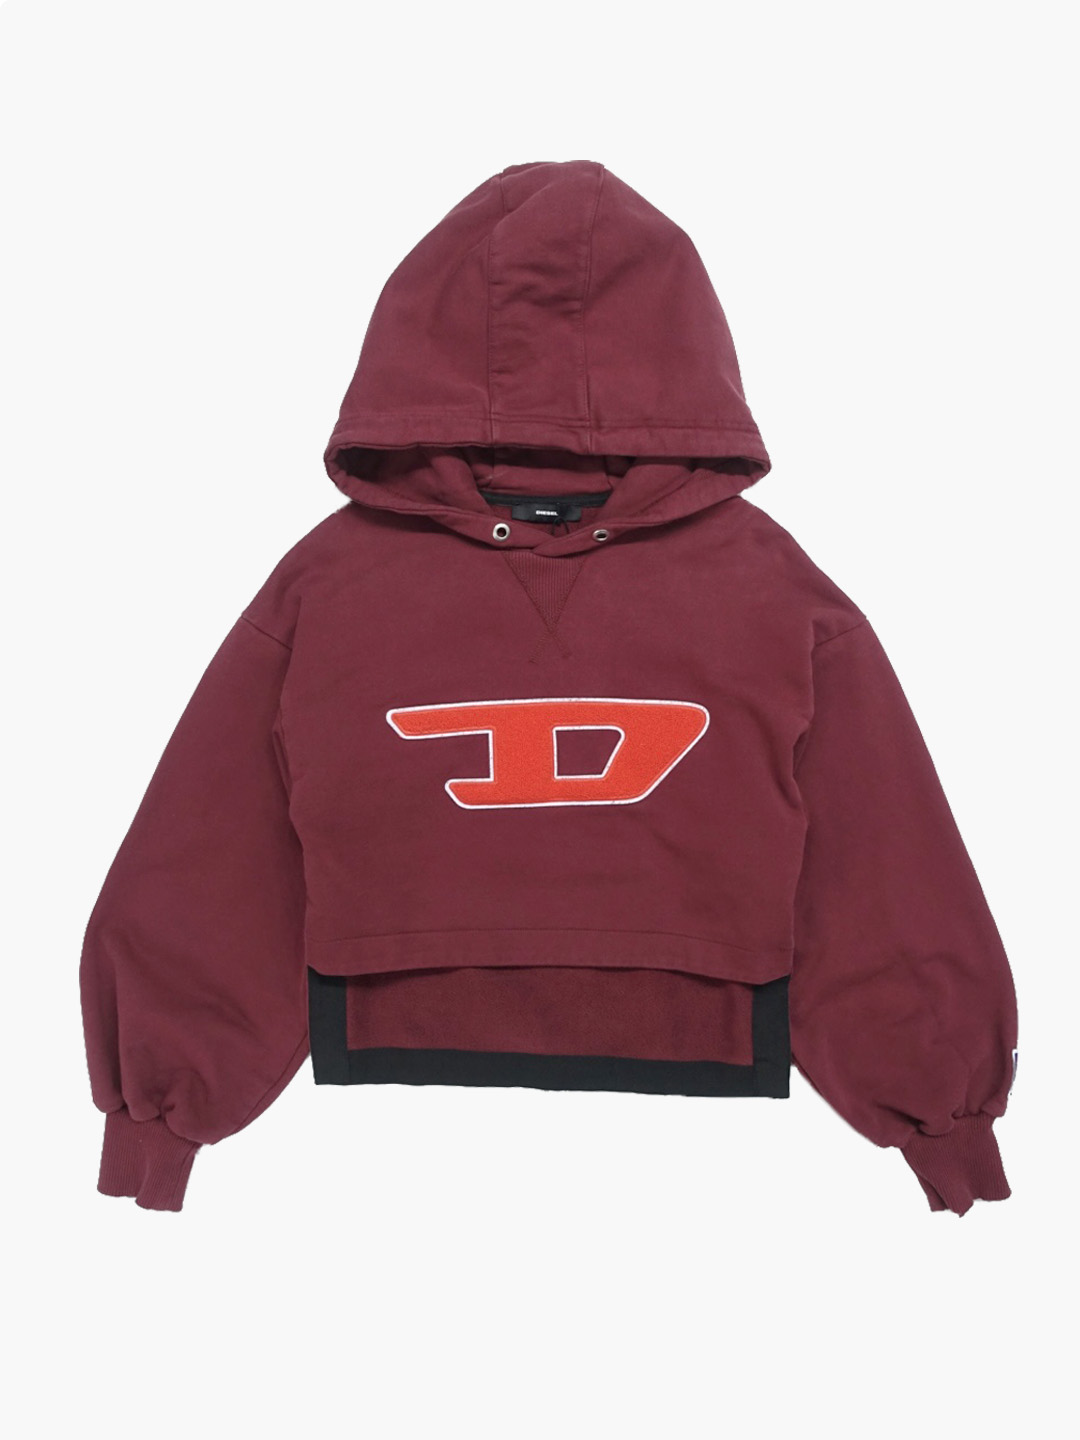 DIESELD logo hoodie